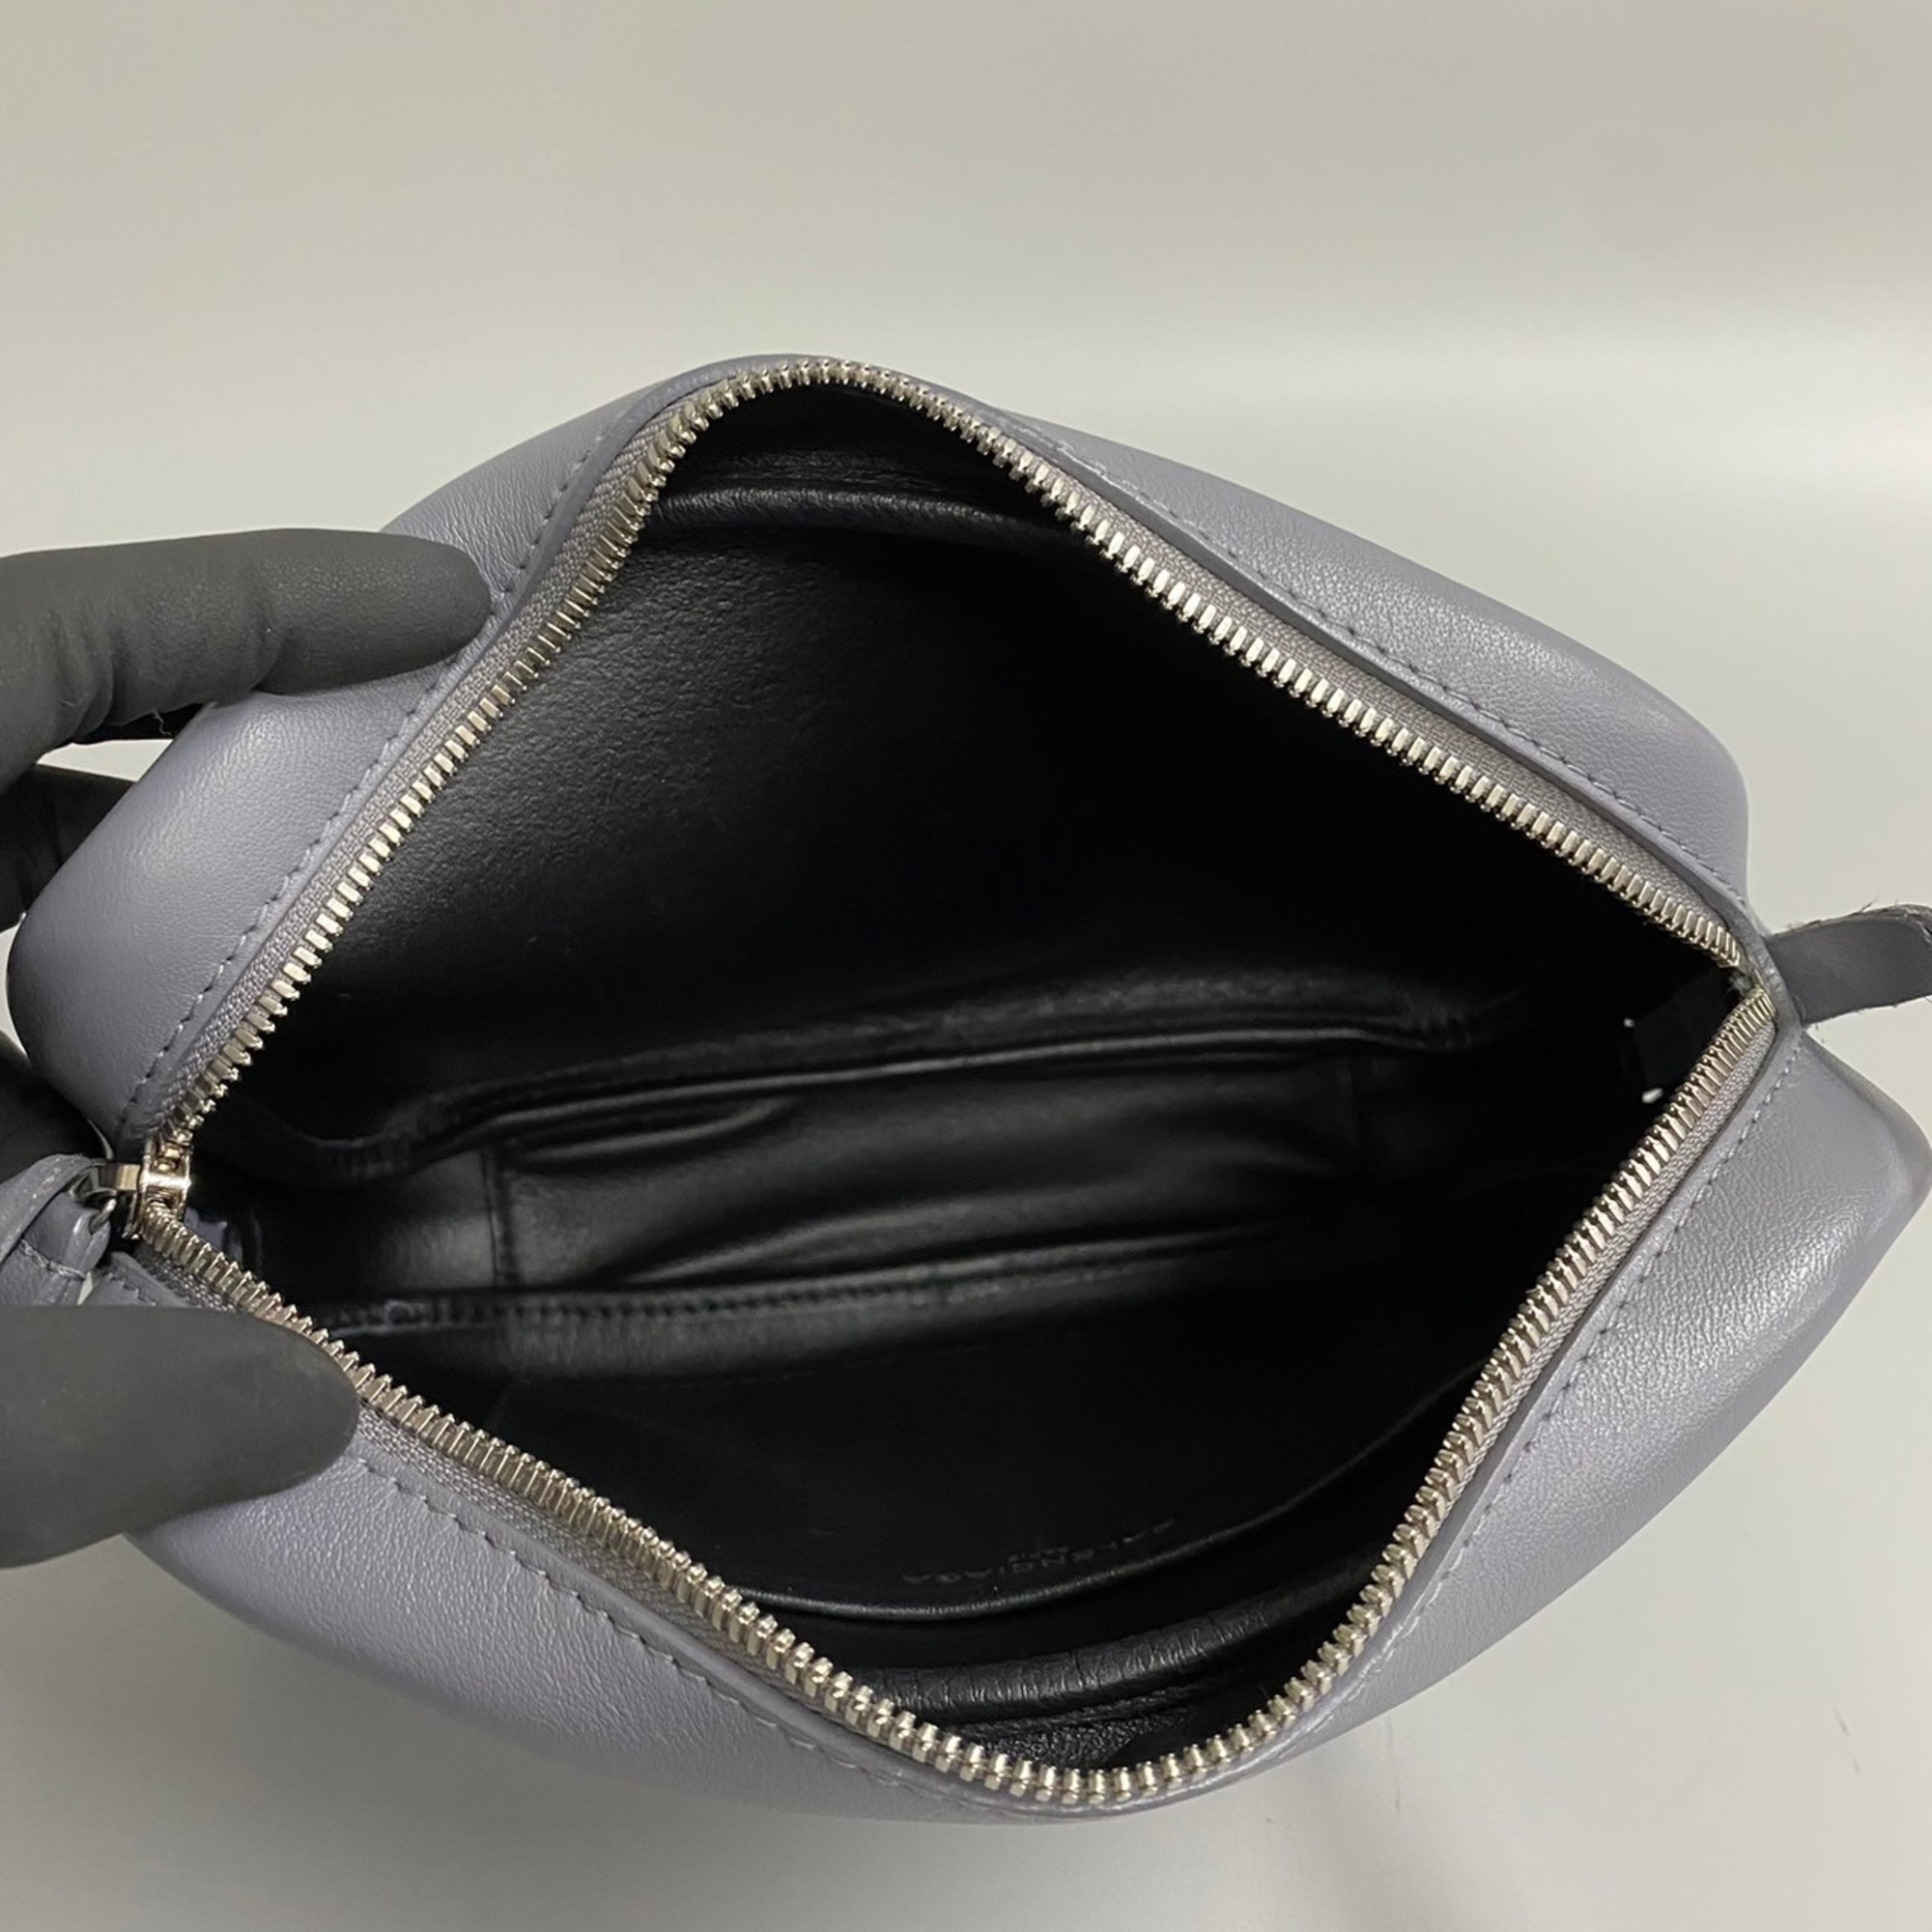 BALENCIAGA Leather Shoulder Bag Sacoche Crossbody Gray 66541